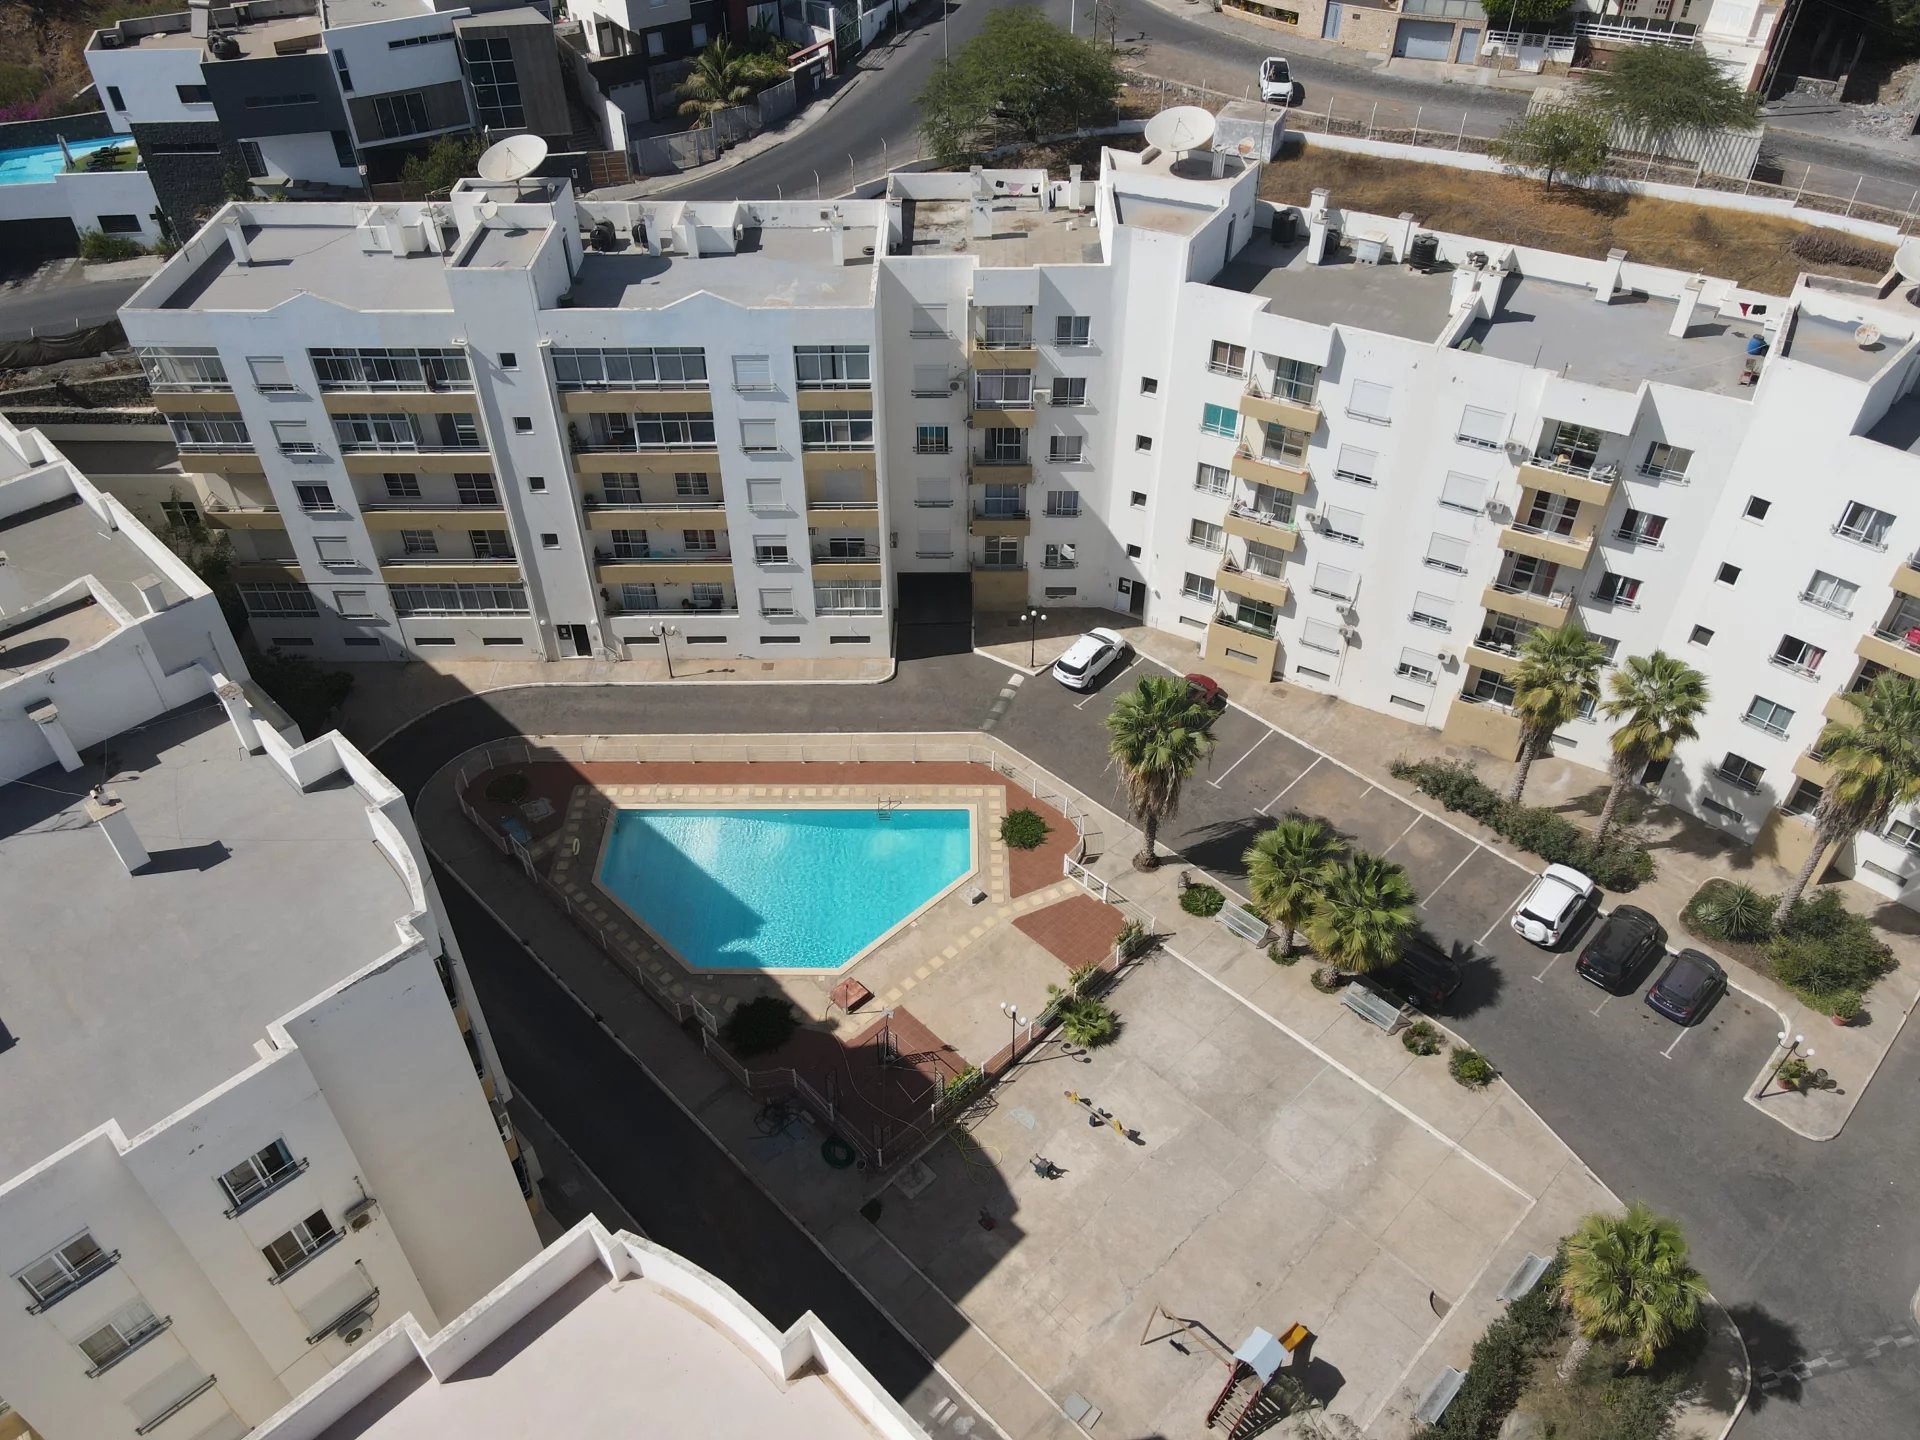 Appartement en location saisonnière à Palmarejo Baixo